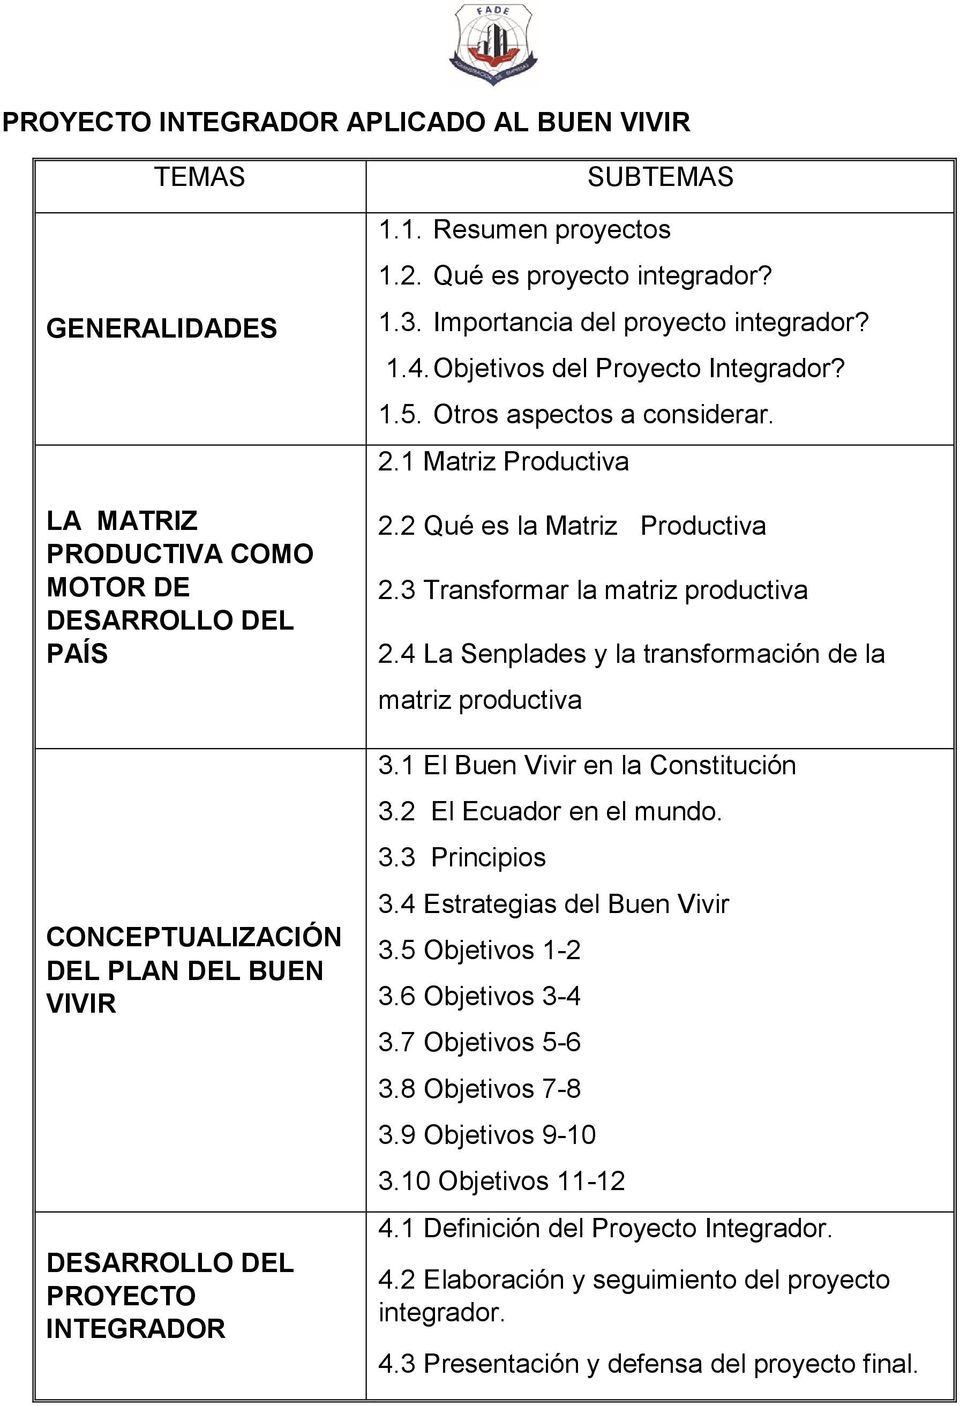 2 Qué es la Matriz Productiva 2.3 Transformar la matriz productiva 2.4 La Senplades y la transformación de la matriz productiva 3.1 El Buen Vivir en la Constitución 3.2 El Ecuador en el mundo. 3.3 Principios 3.